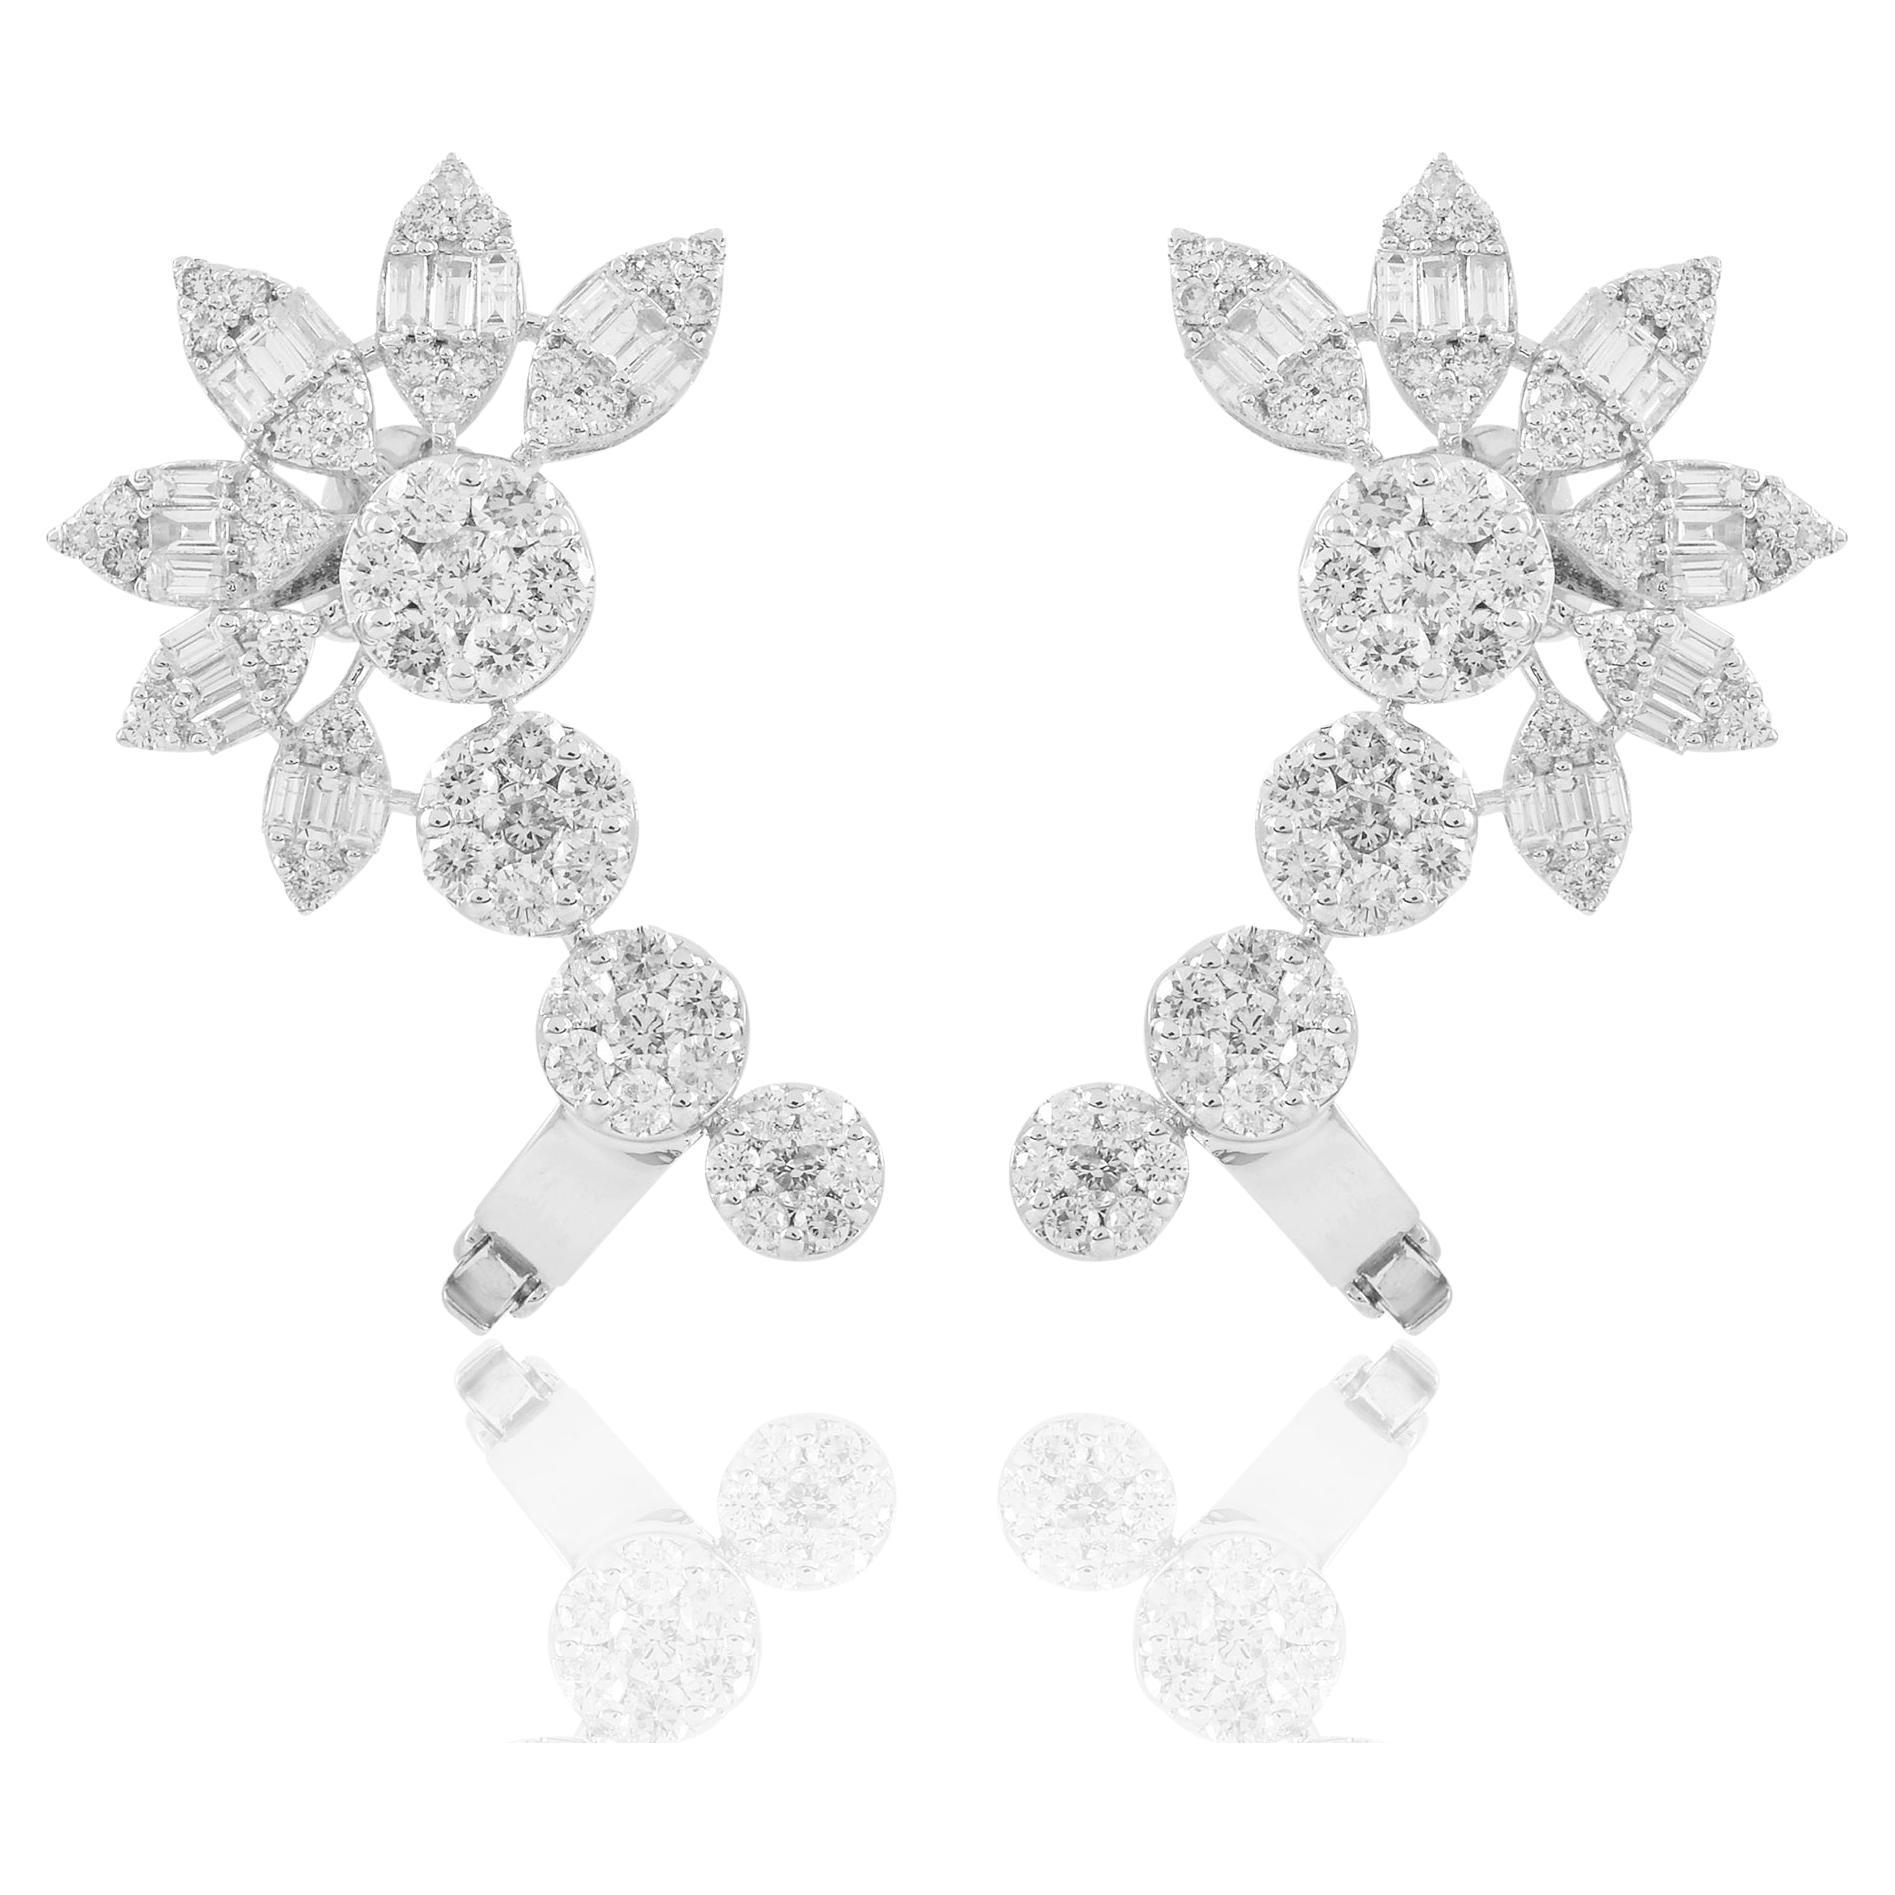 4 Carat Baguette Round Diamond Ear Cuff Earrings 18 Karat White Gold Jewelry